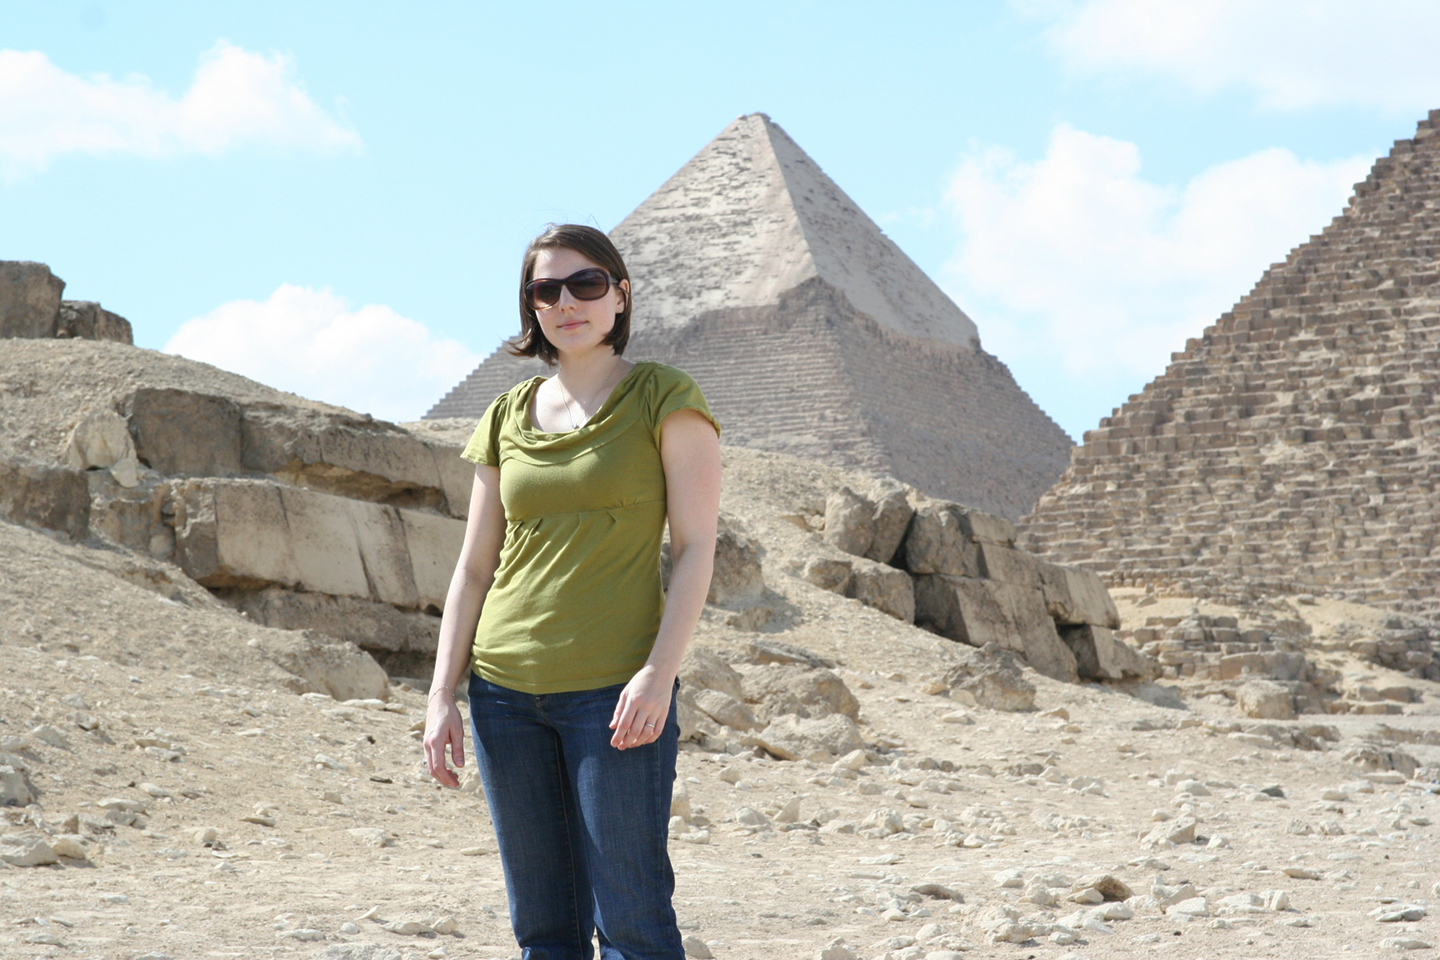 meredith pyramids.com